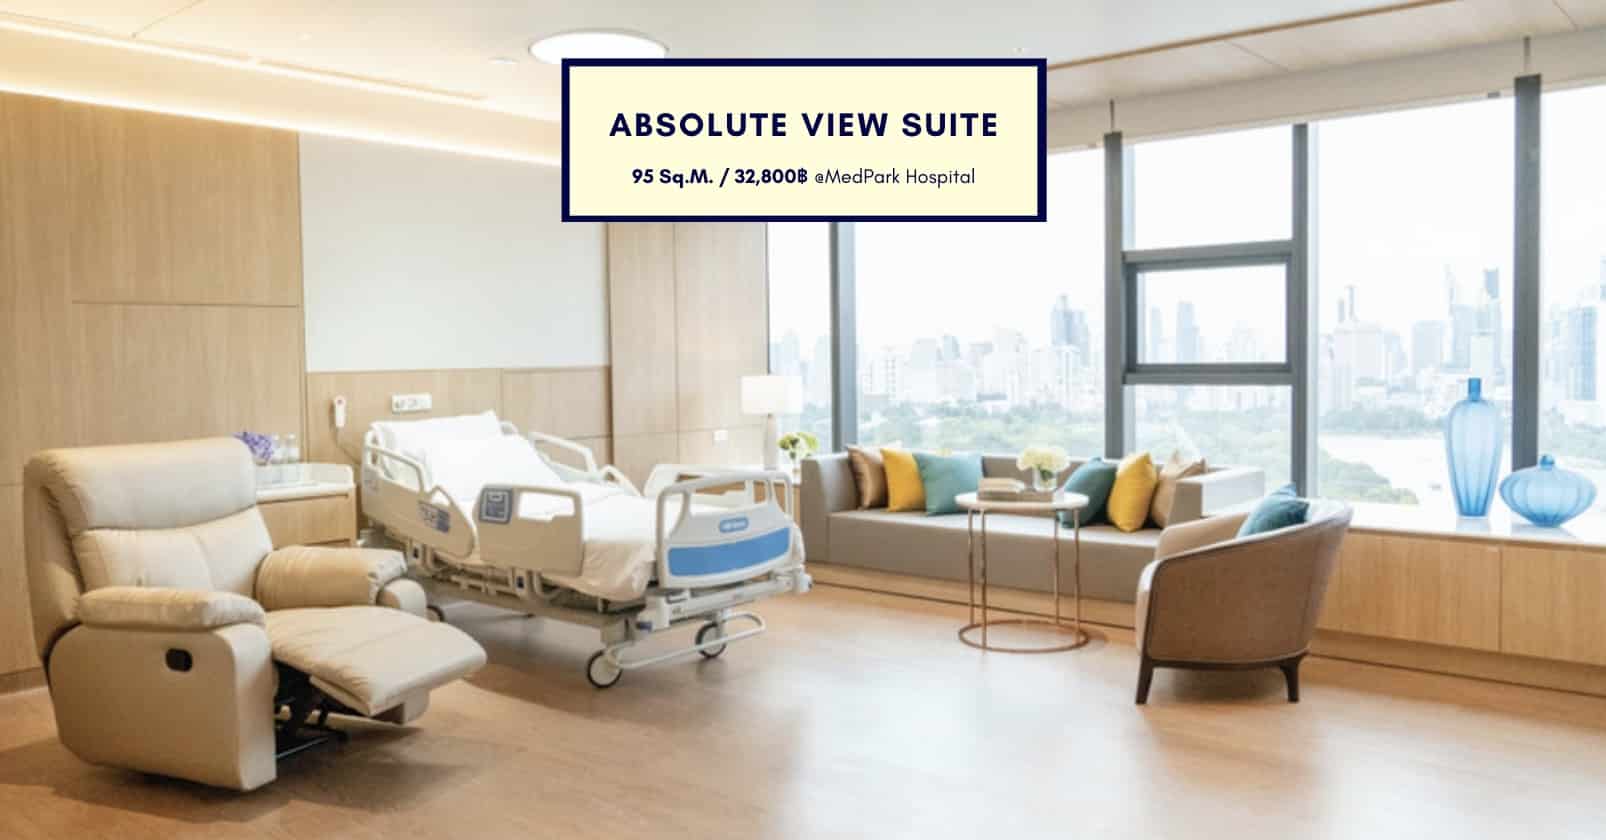 ห้อง Absolute View Suite โรงพยาบาลเมดพาร์ค